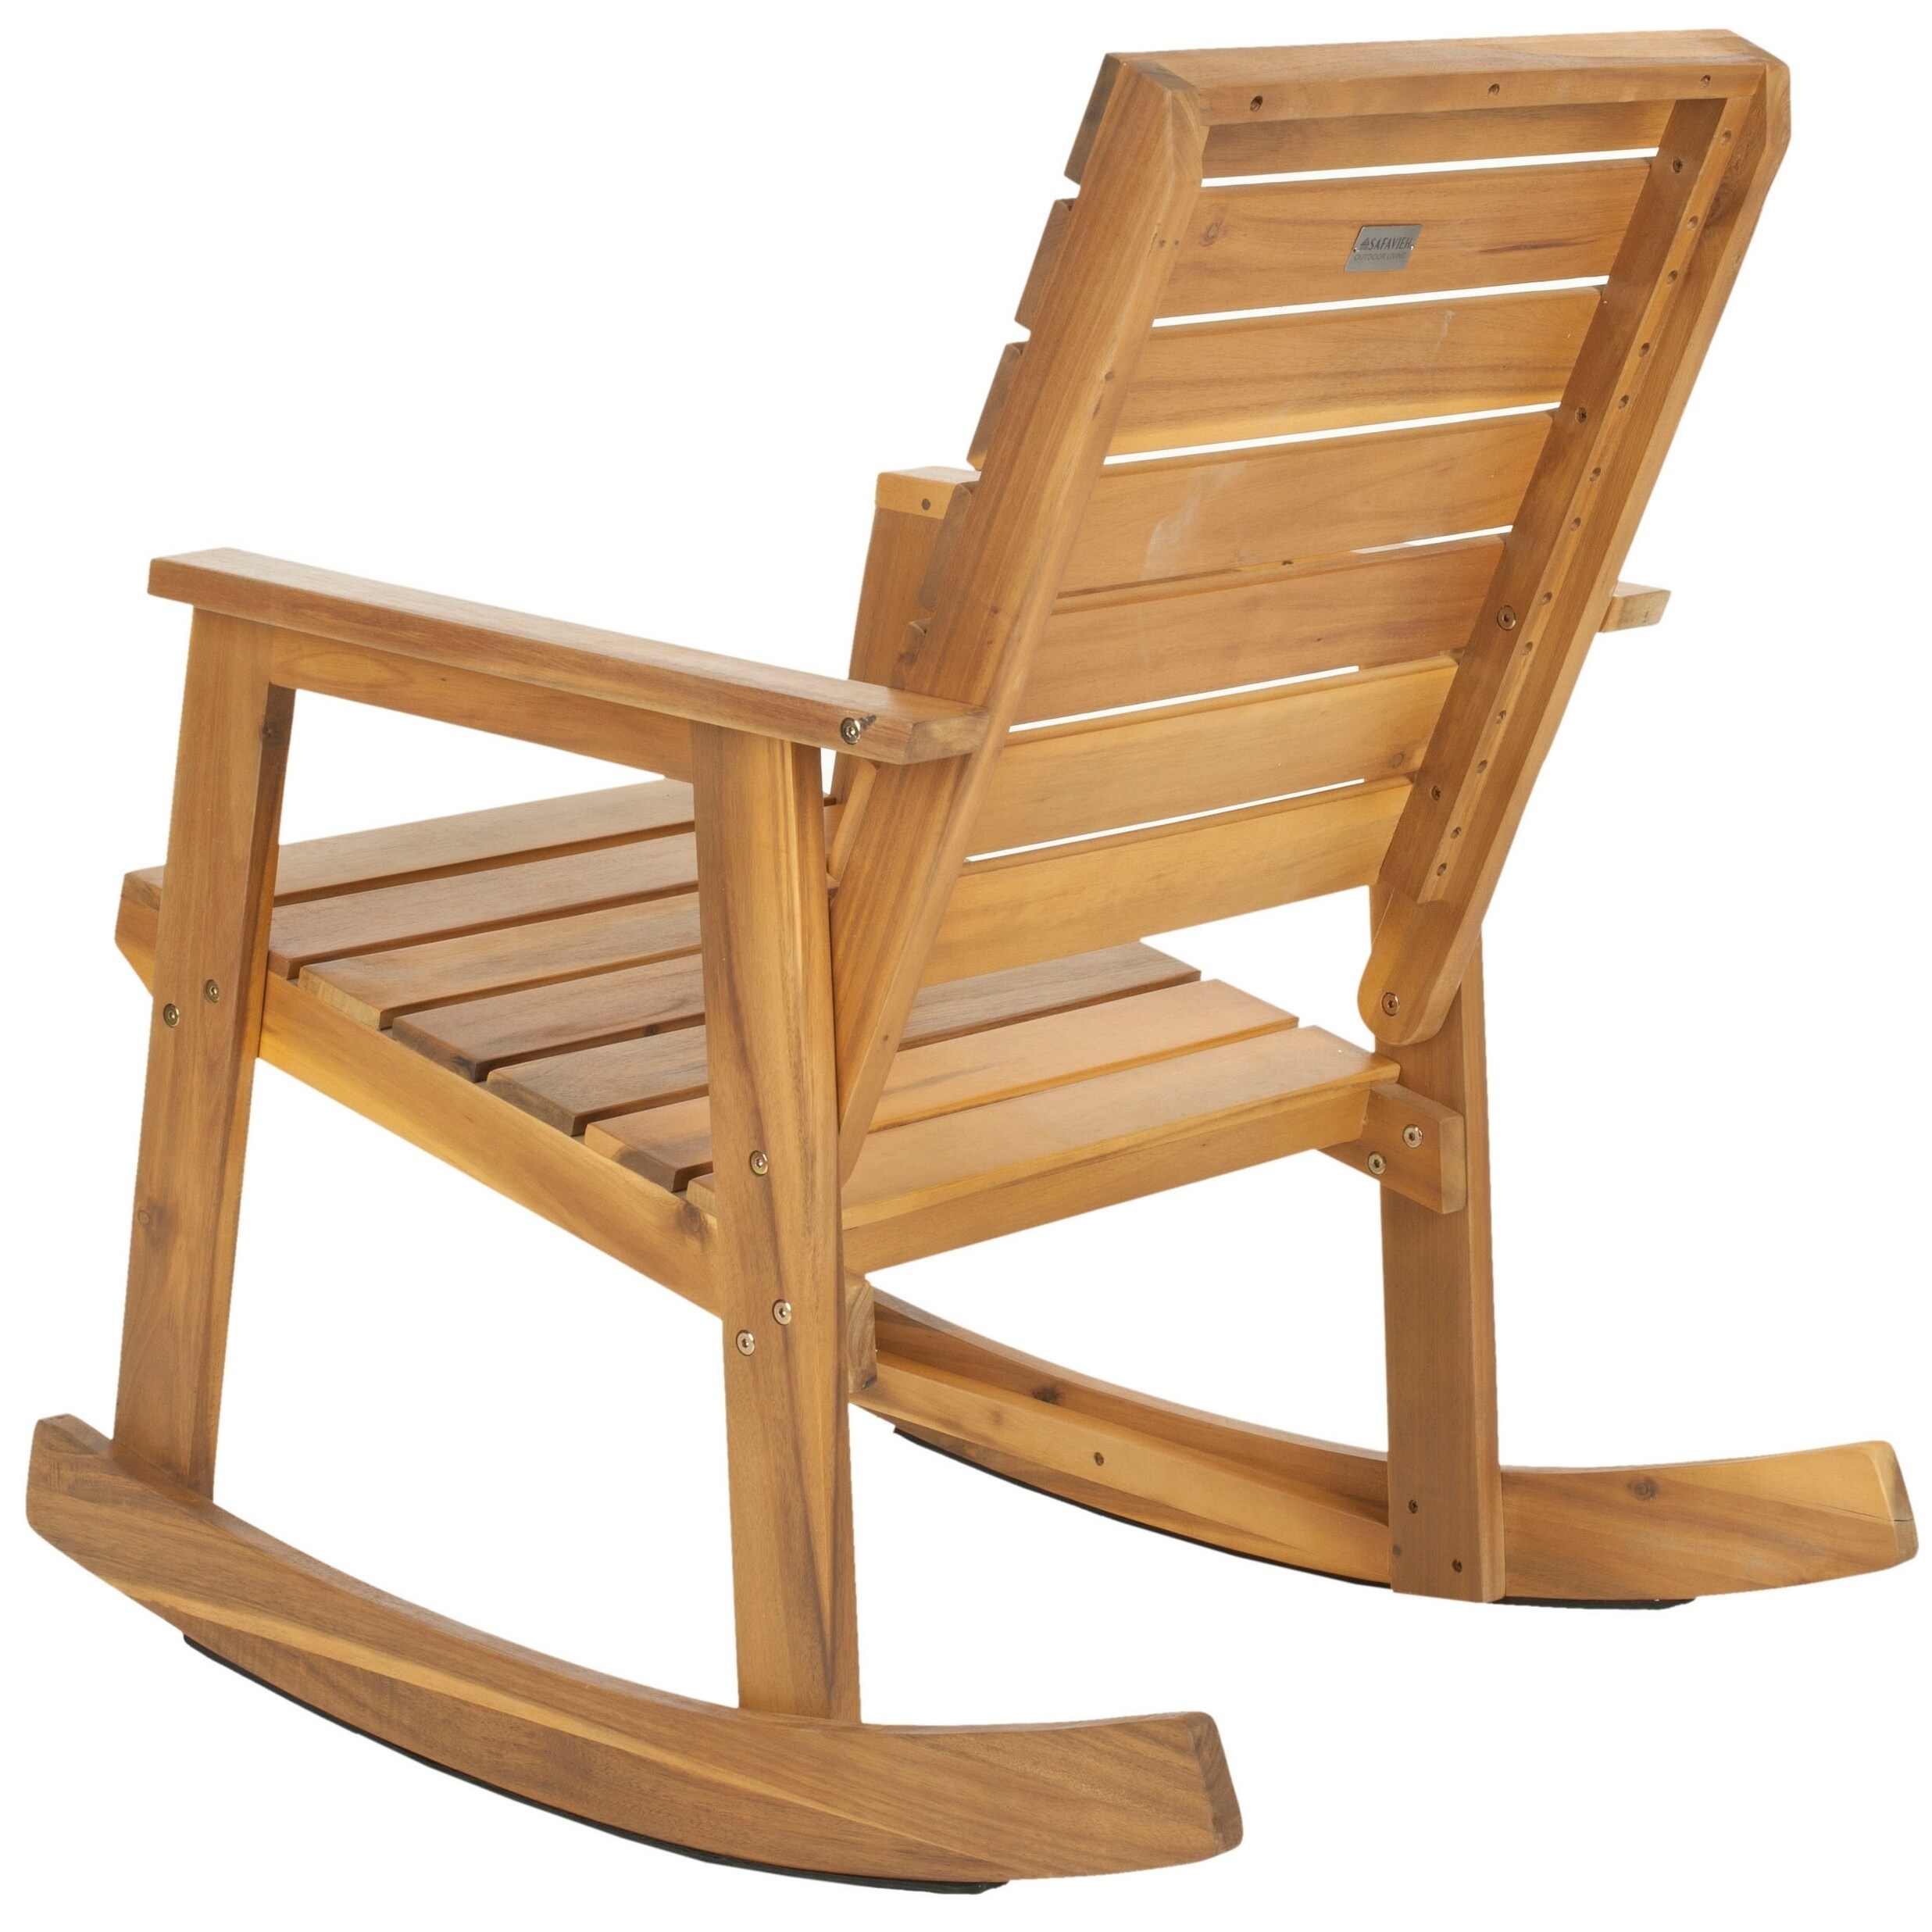 деревянная кресло качалка для детей